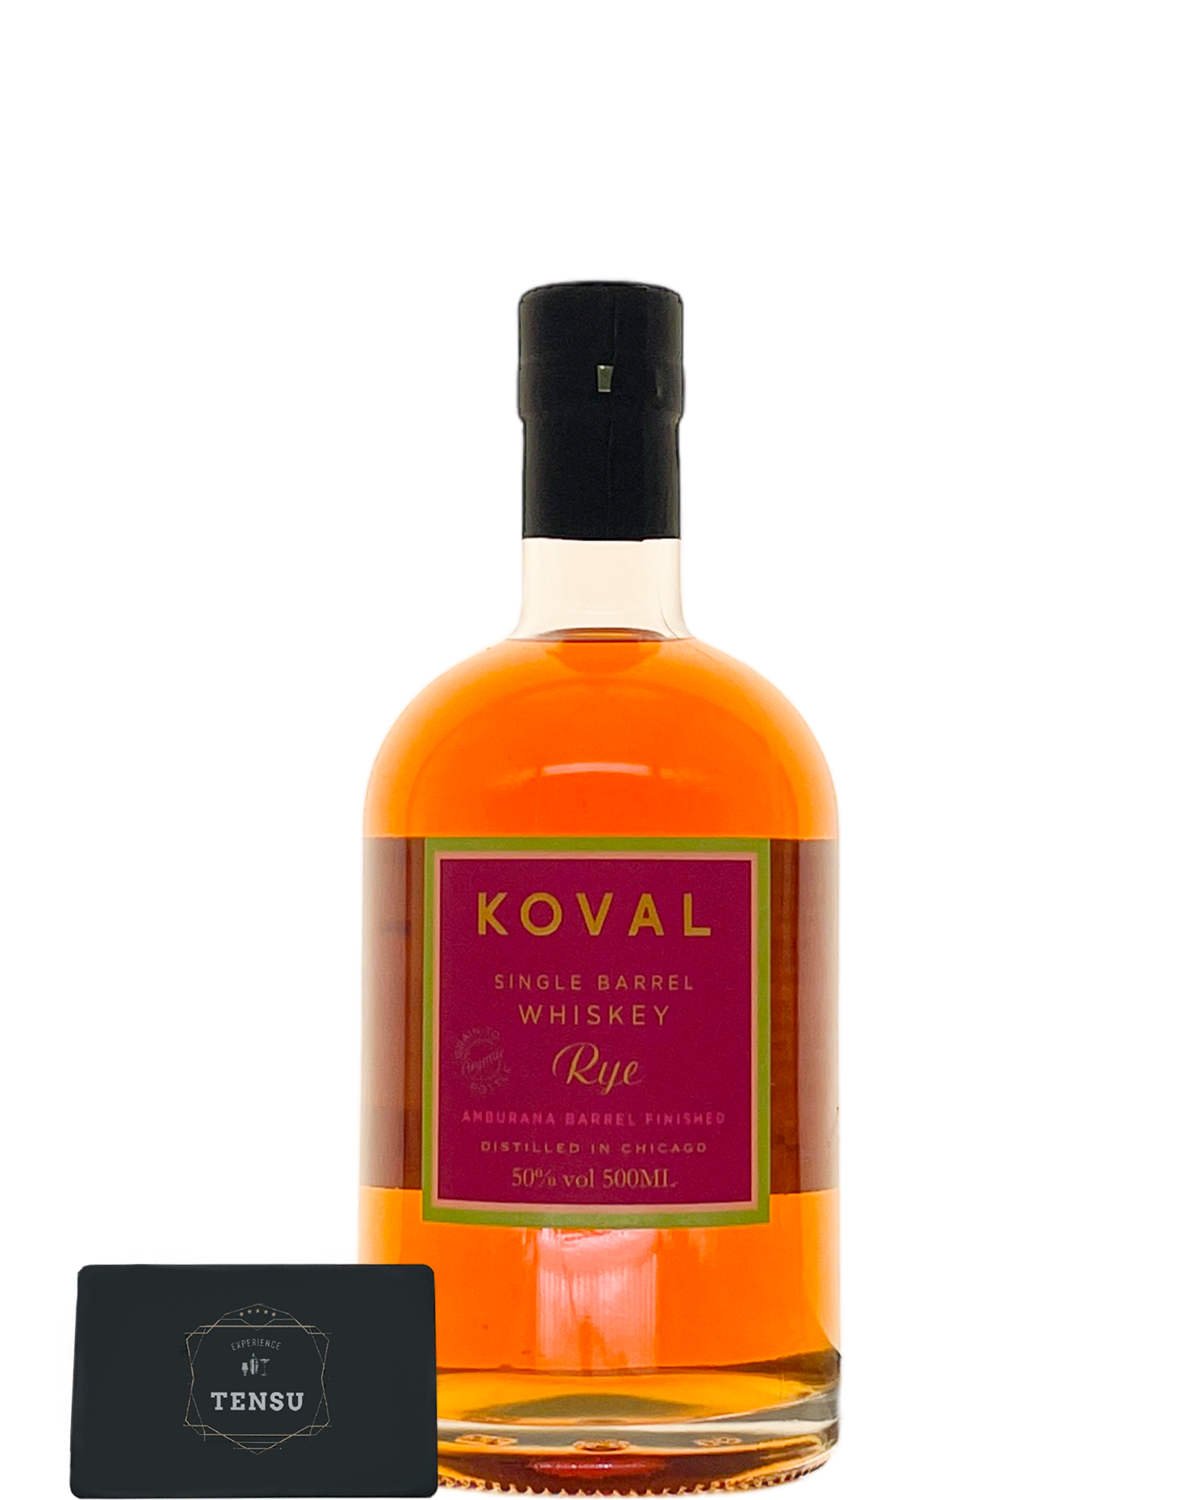 Koval Rye (Single Barrel Rye Whiskey) Amburana Barrel Finish 50.0 "OB"